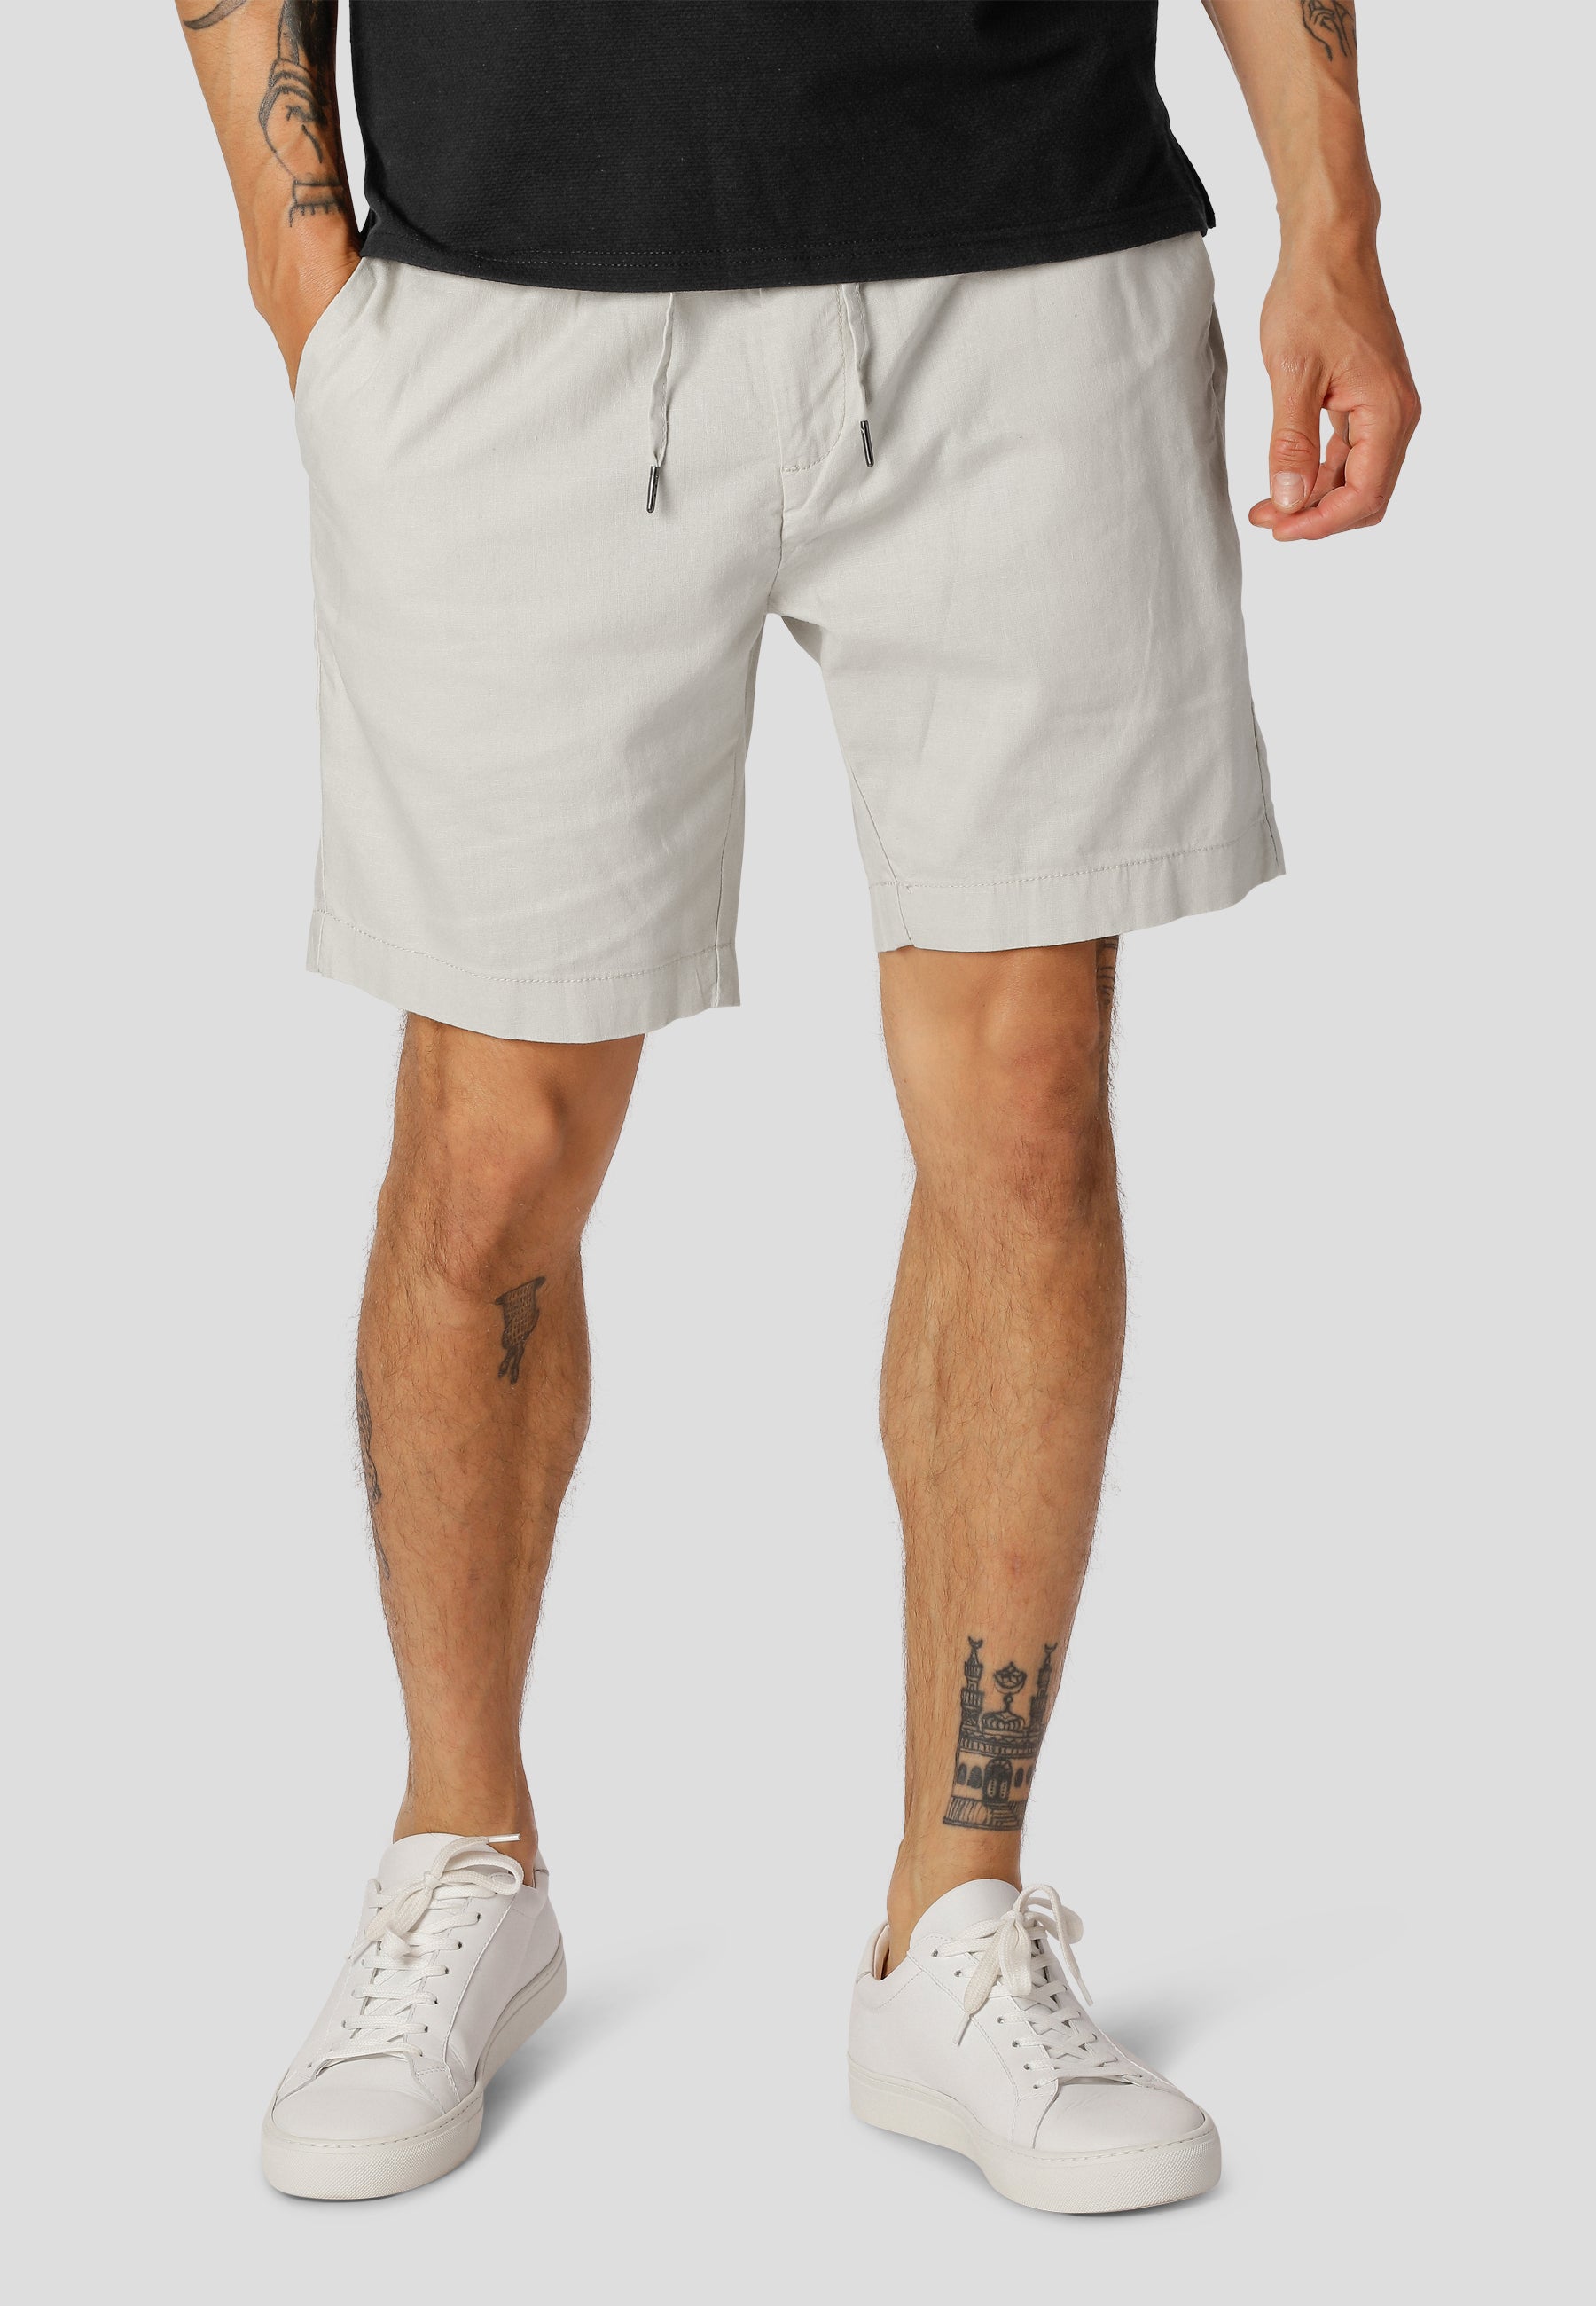 Barcelona Cotton / Linen Shorts - White